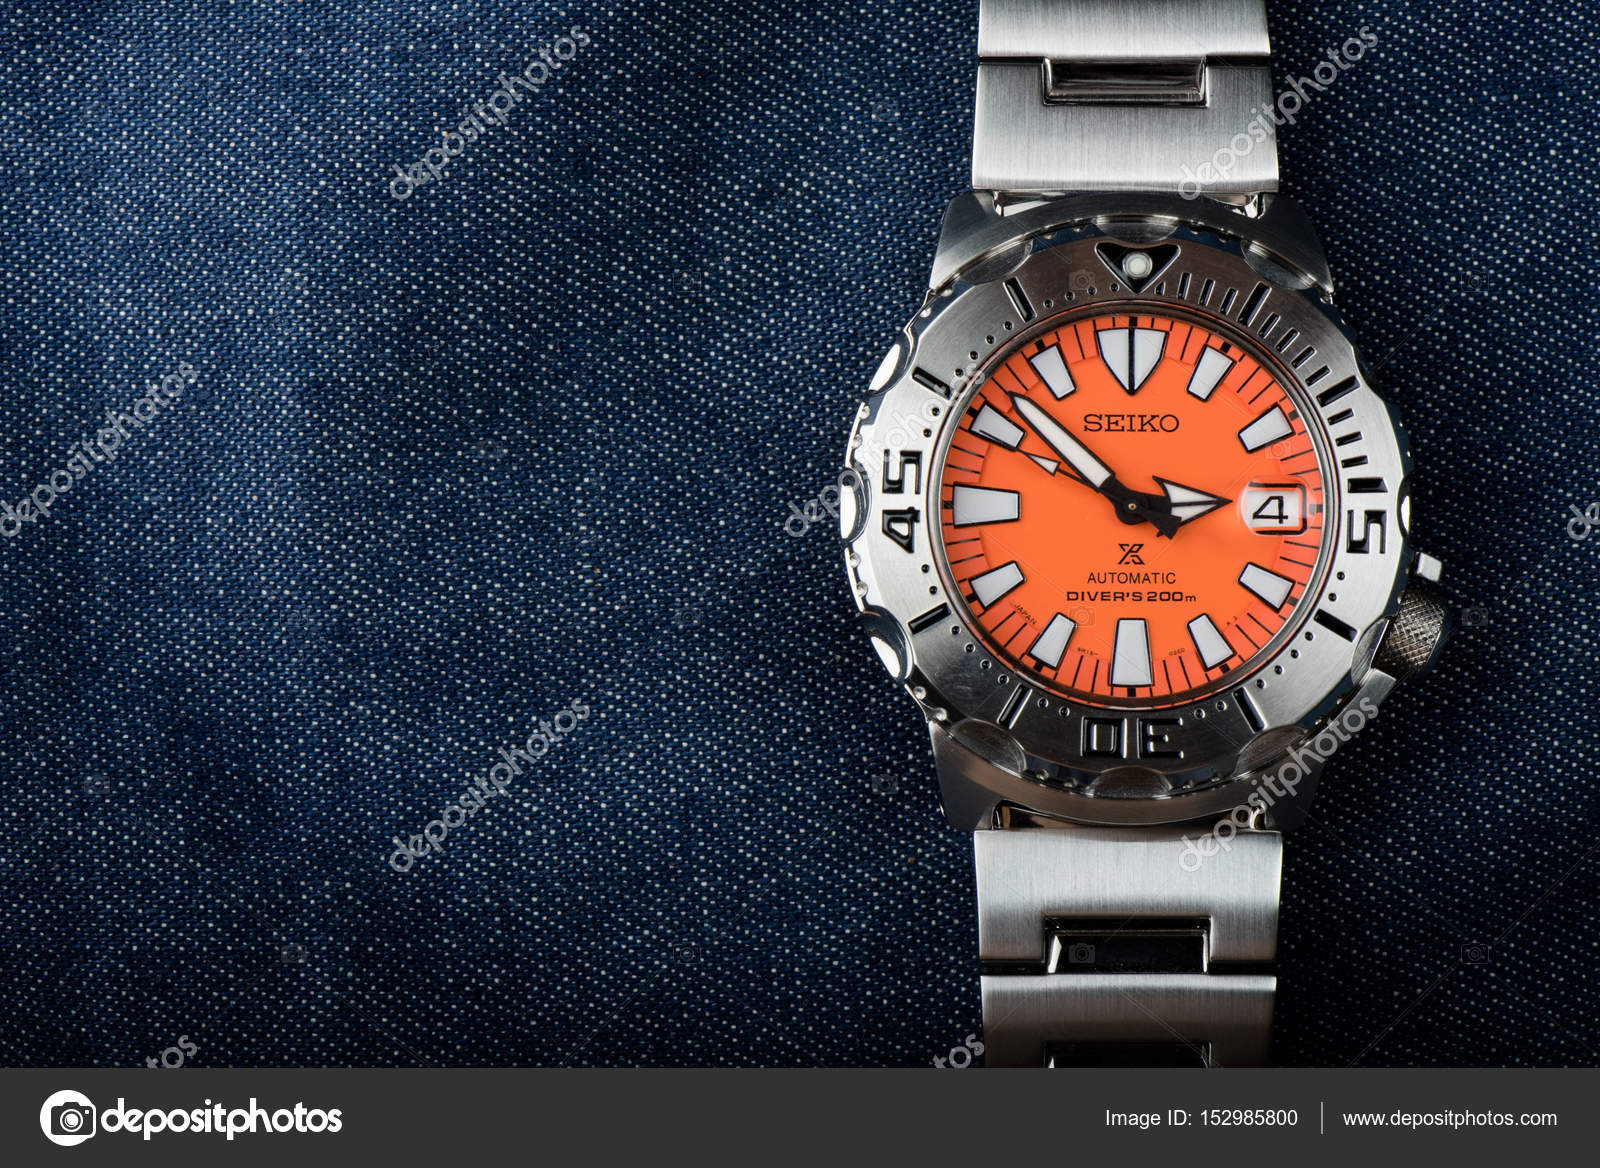 Zegarek Seiko - Zdjęcie stockowe redakcyjne © norgallery #152985800